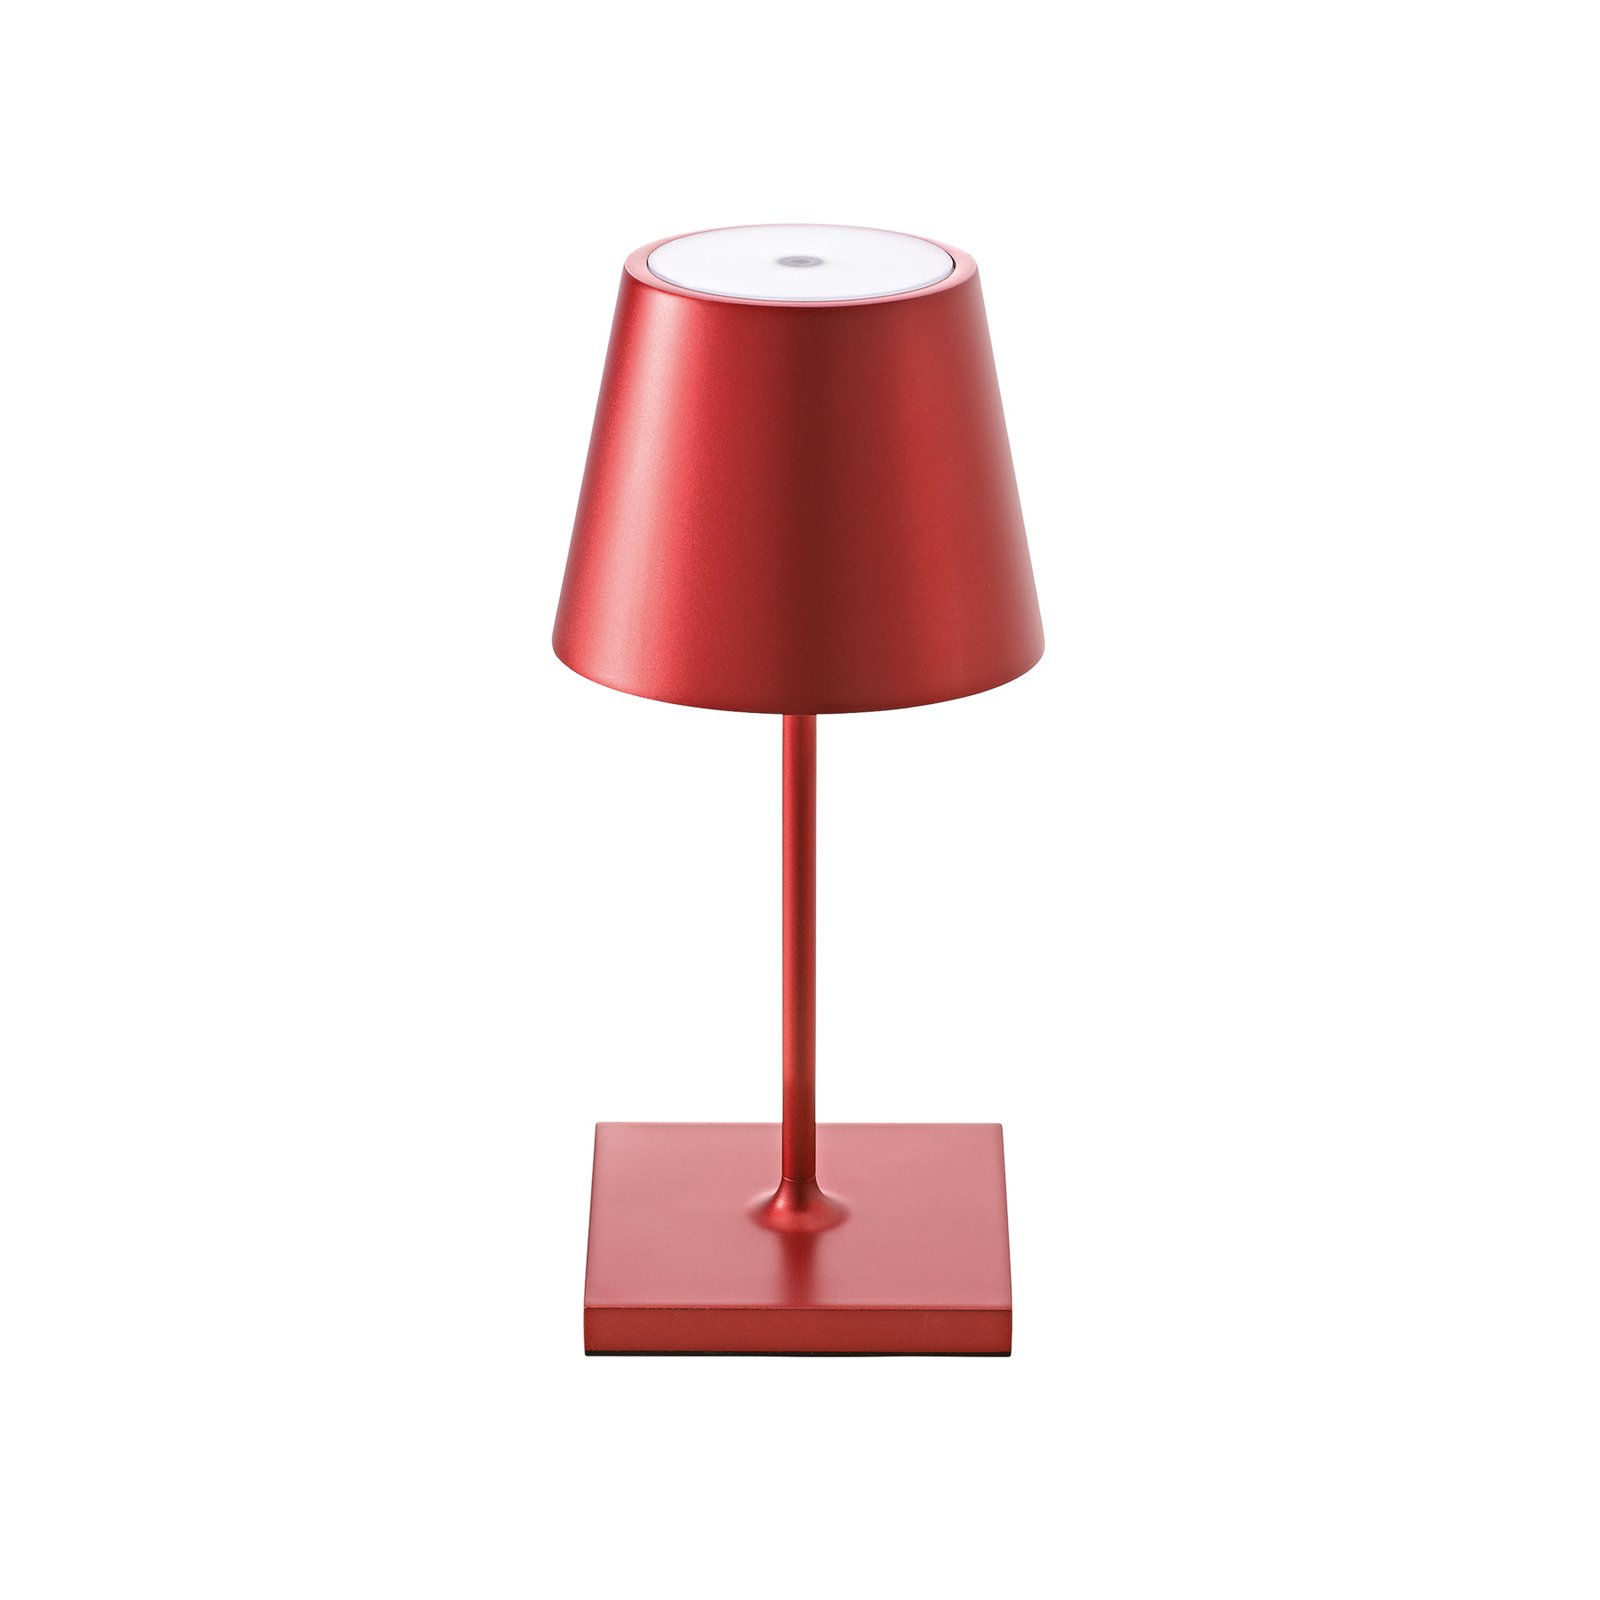 Nuindie mini LED dobíjecí stolní lampa, kulatá, USB-C, třešňově červená